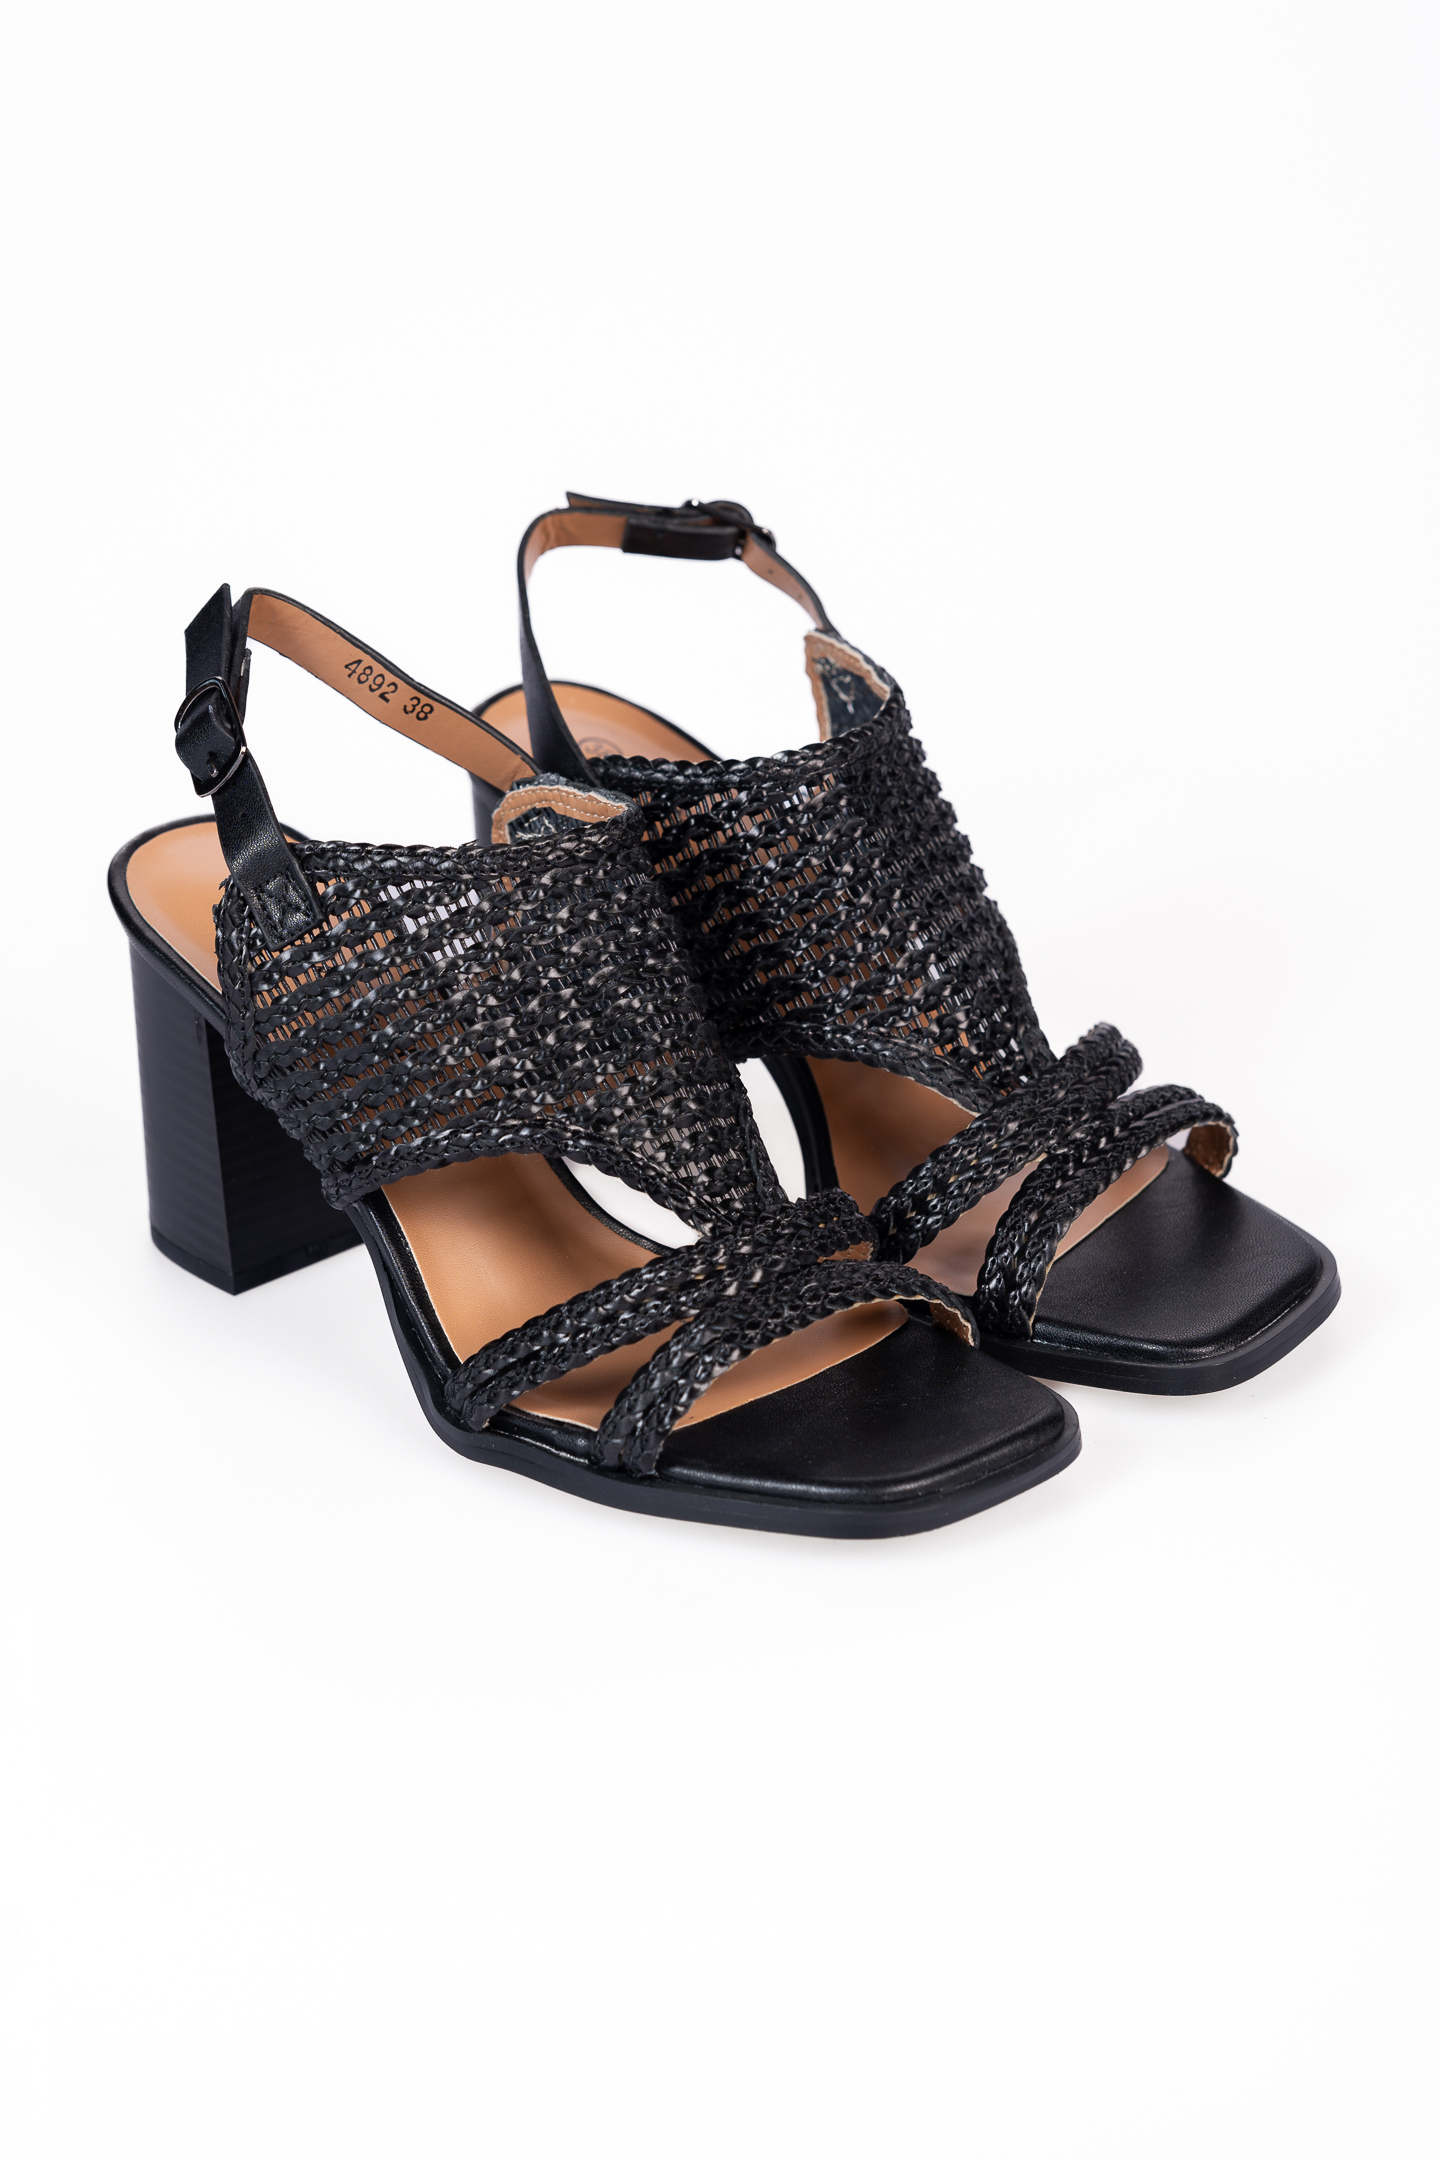 Παπούτσια > Πέδιλα Πέδιλα με χοντρό τακούνι και πλεκτό σχέδιο - Μαύρο